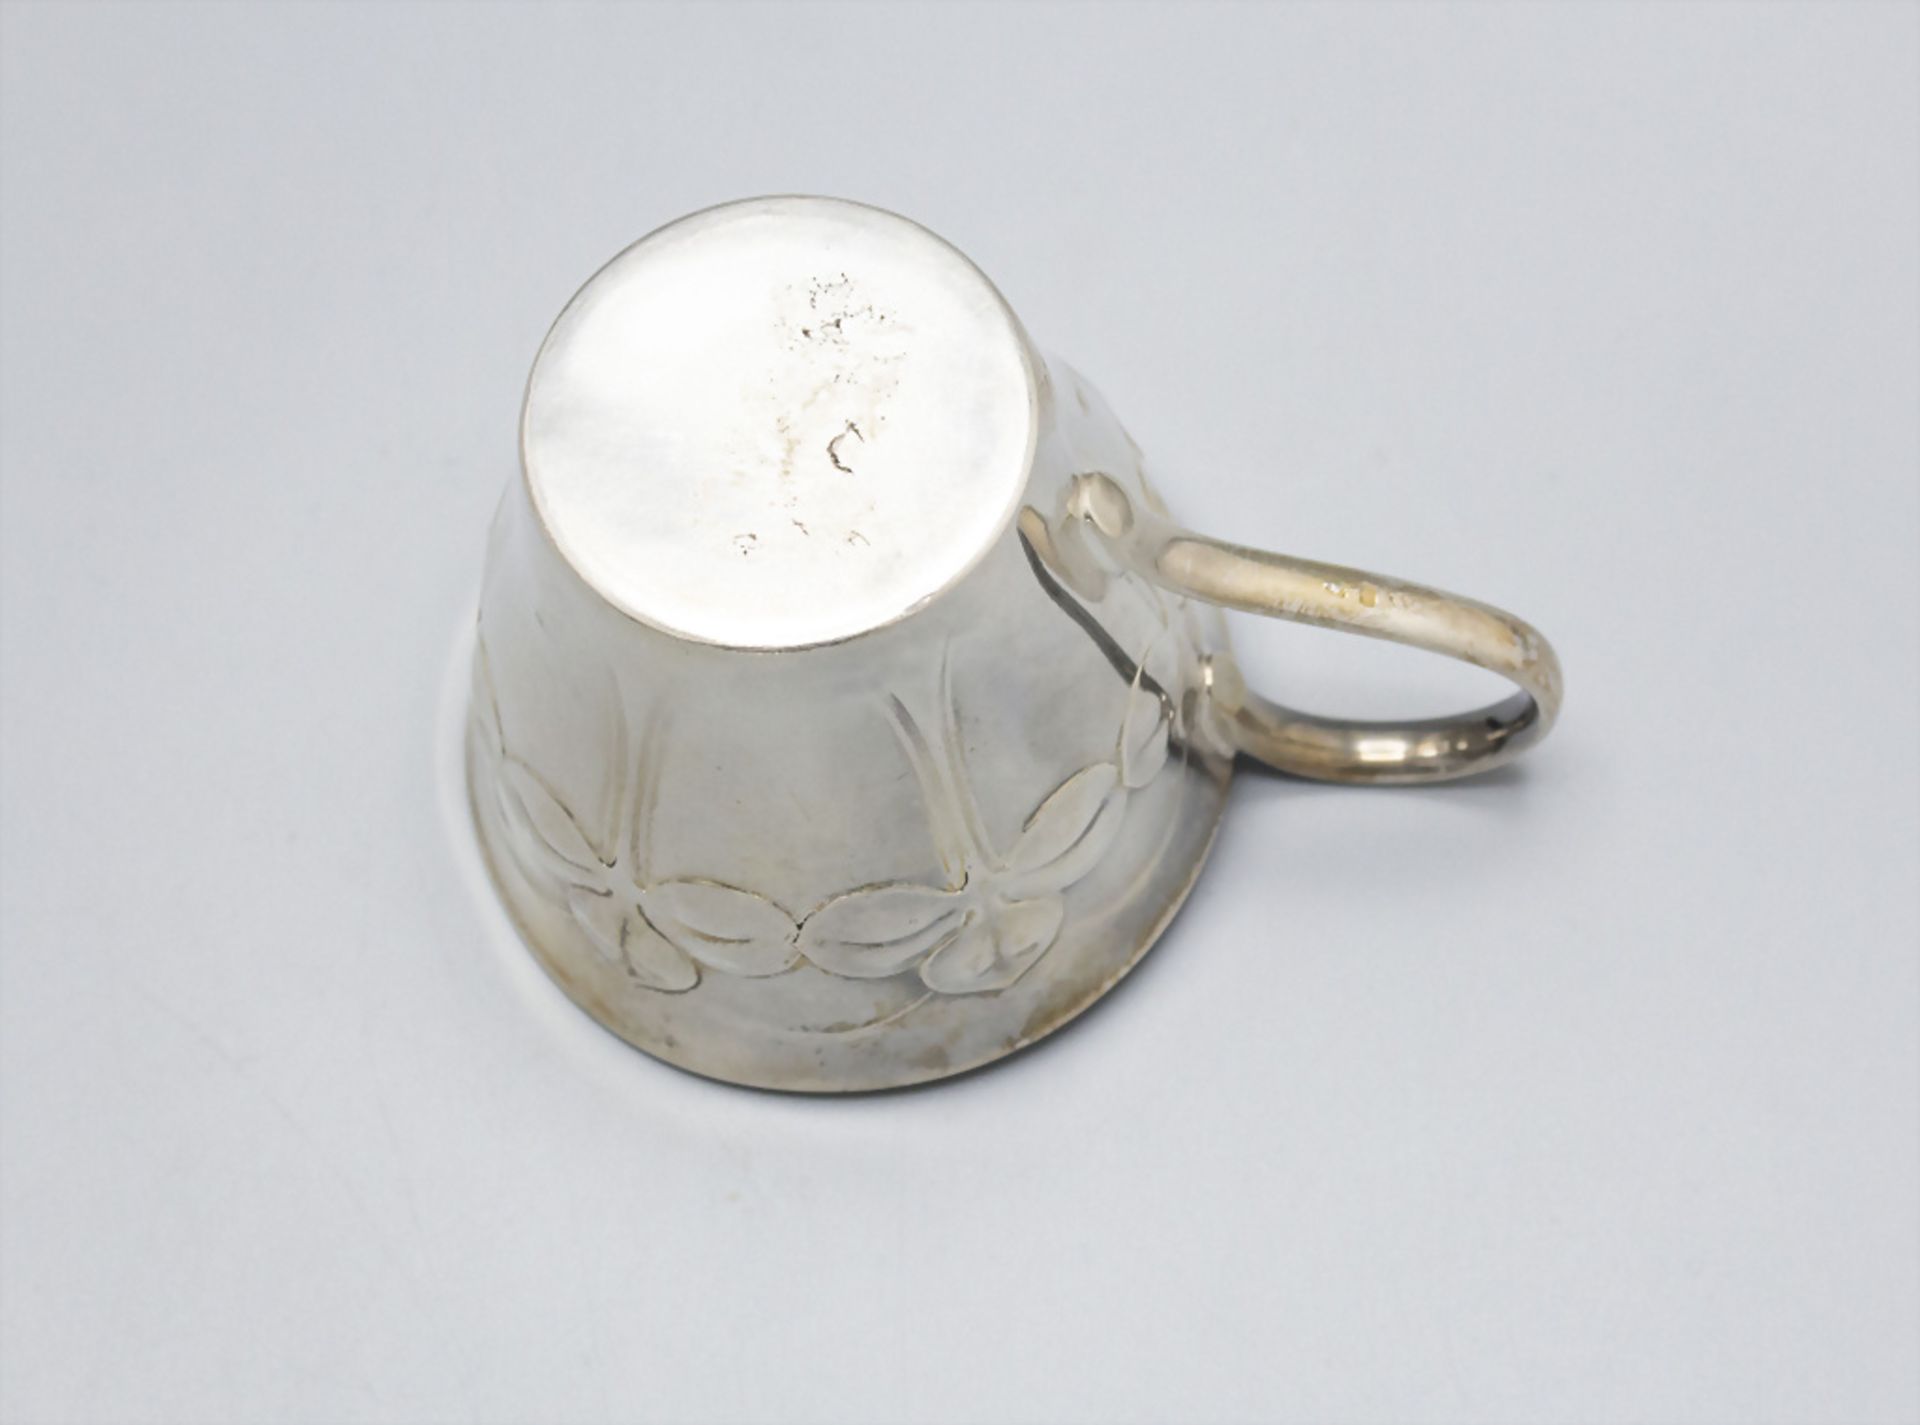 Jugendstil Tasse und Untertasse mit Kleeblattdekor / An Art Nouveau cup and saucer with ... - Bild 3 aus 6